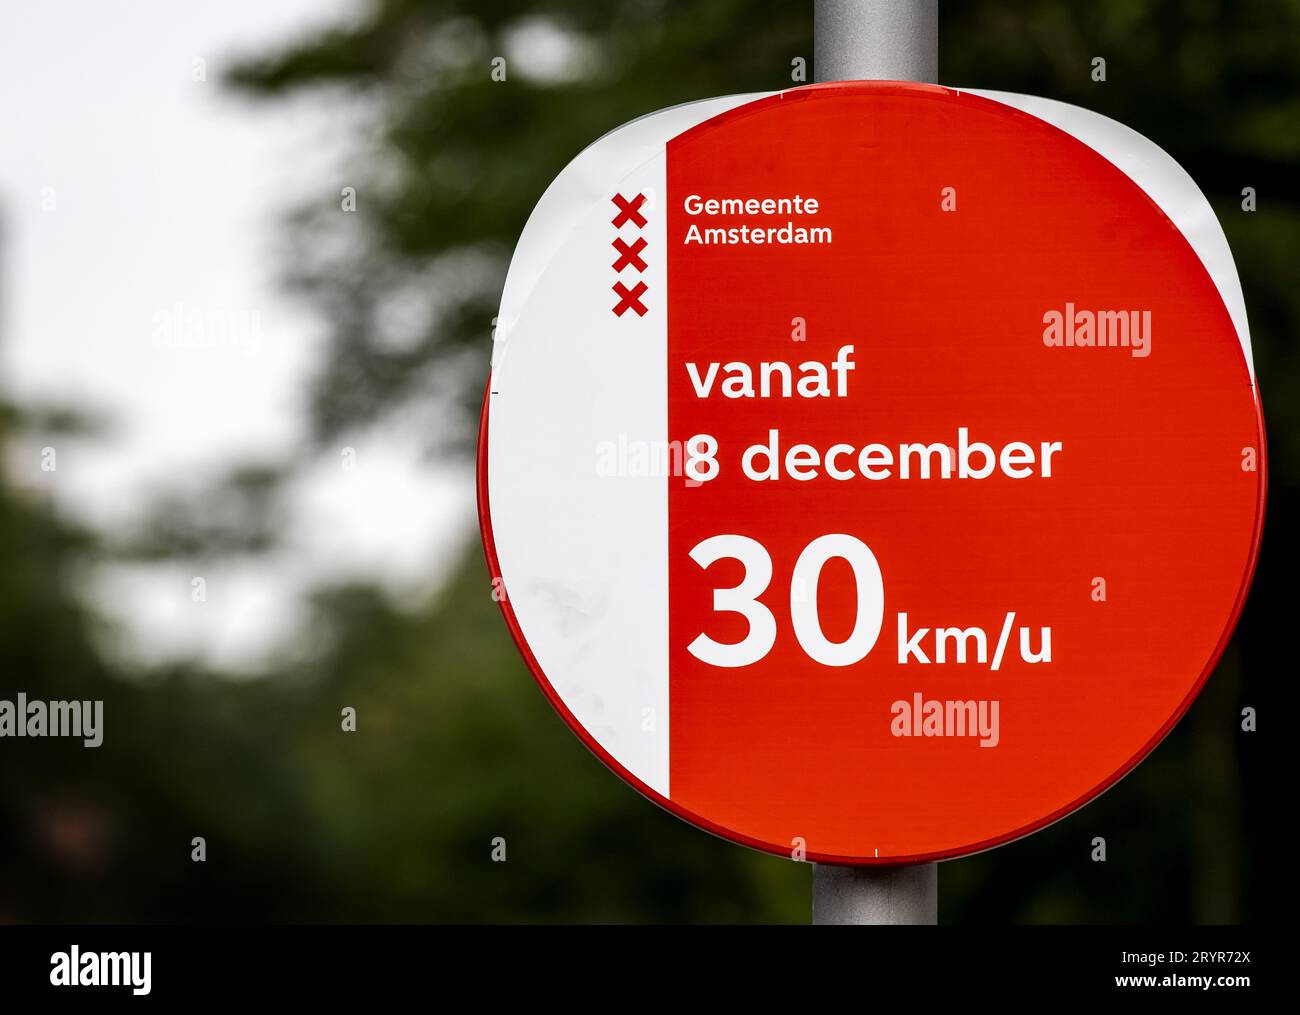 AMSTERDAM - Amsterdam si appresta ad introdurre il limite di velocità di 30 chilometri orari. La misura entrerà in vigore a dicembre, ma sono già in corso l'installazione di nuovi segnali di velocità, l'adeguamento dei semafori e l'adozione di altre misure infrastrutturali. ANP KOEN VAN WEEL paesi bassi fuori - belgio fuori Foto Stock